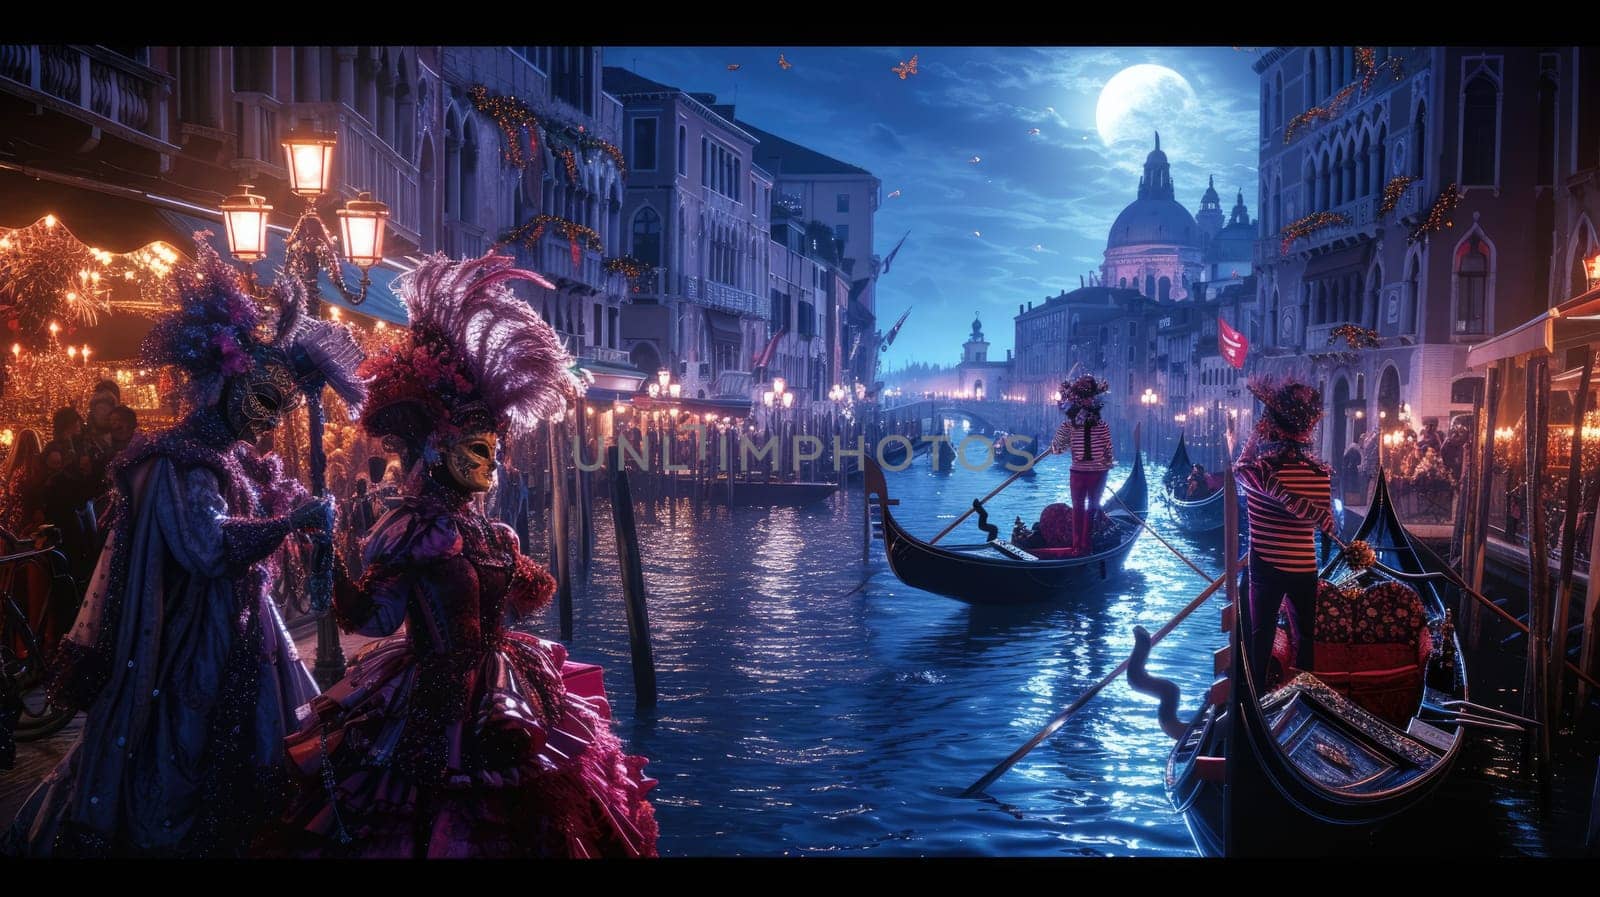 A grand Venetian carnival scene, elaborate masks. Resplendent. by biancoblue